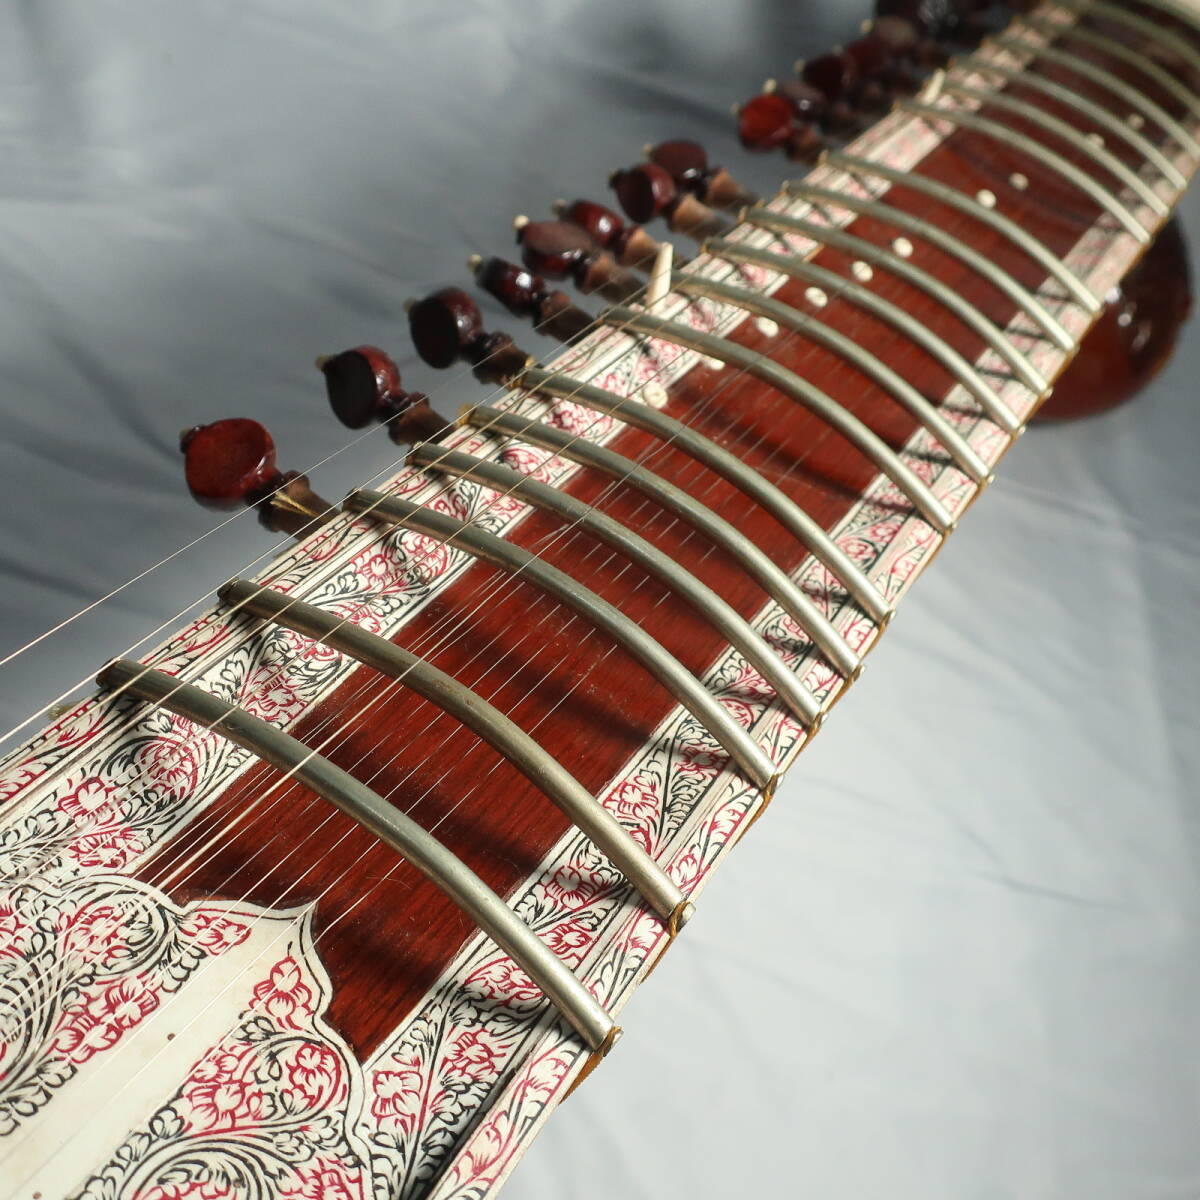 シタール ハードケース付 インド 民族楽器 全長約124cm 装飾バインディング 木彫り植物柄模様ボディ 楽器/220サイズ_画像3